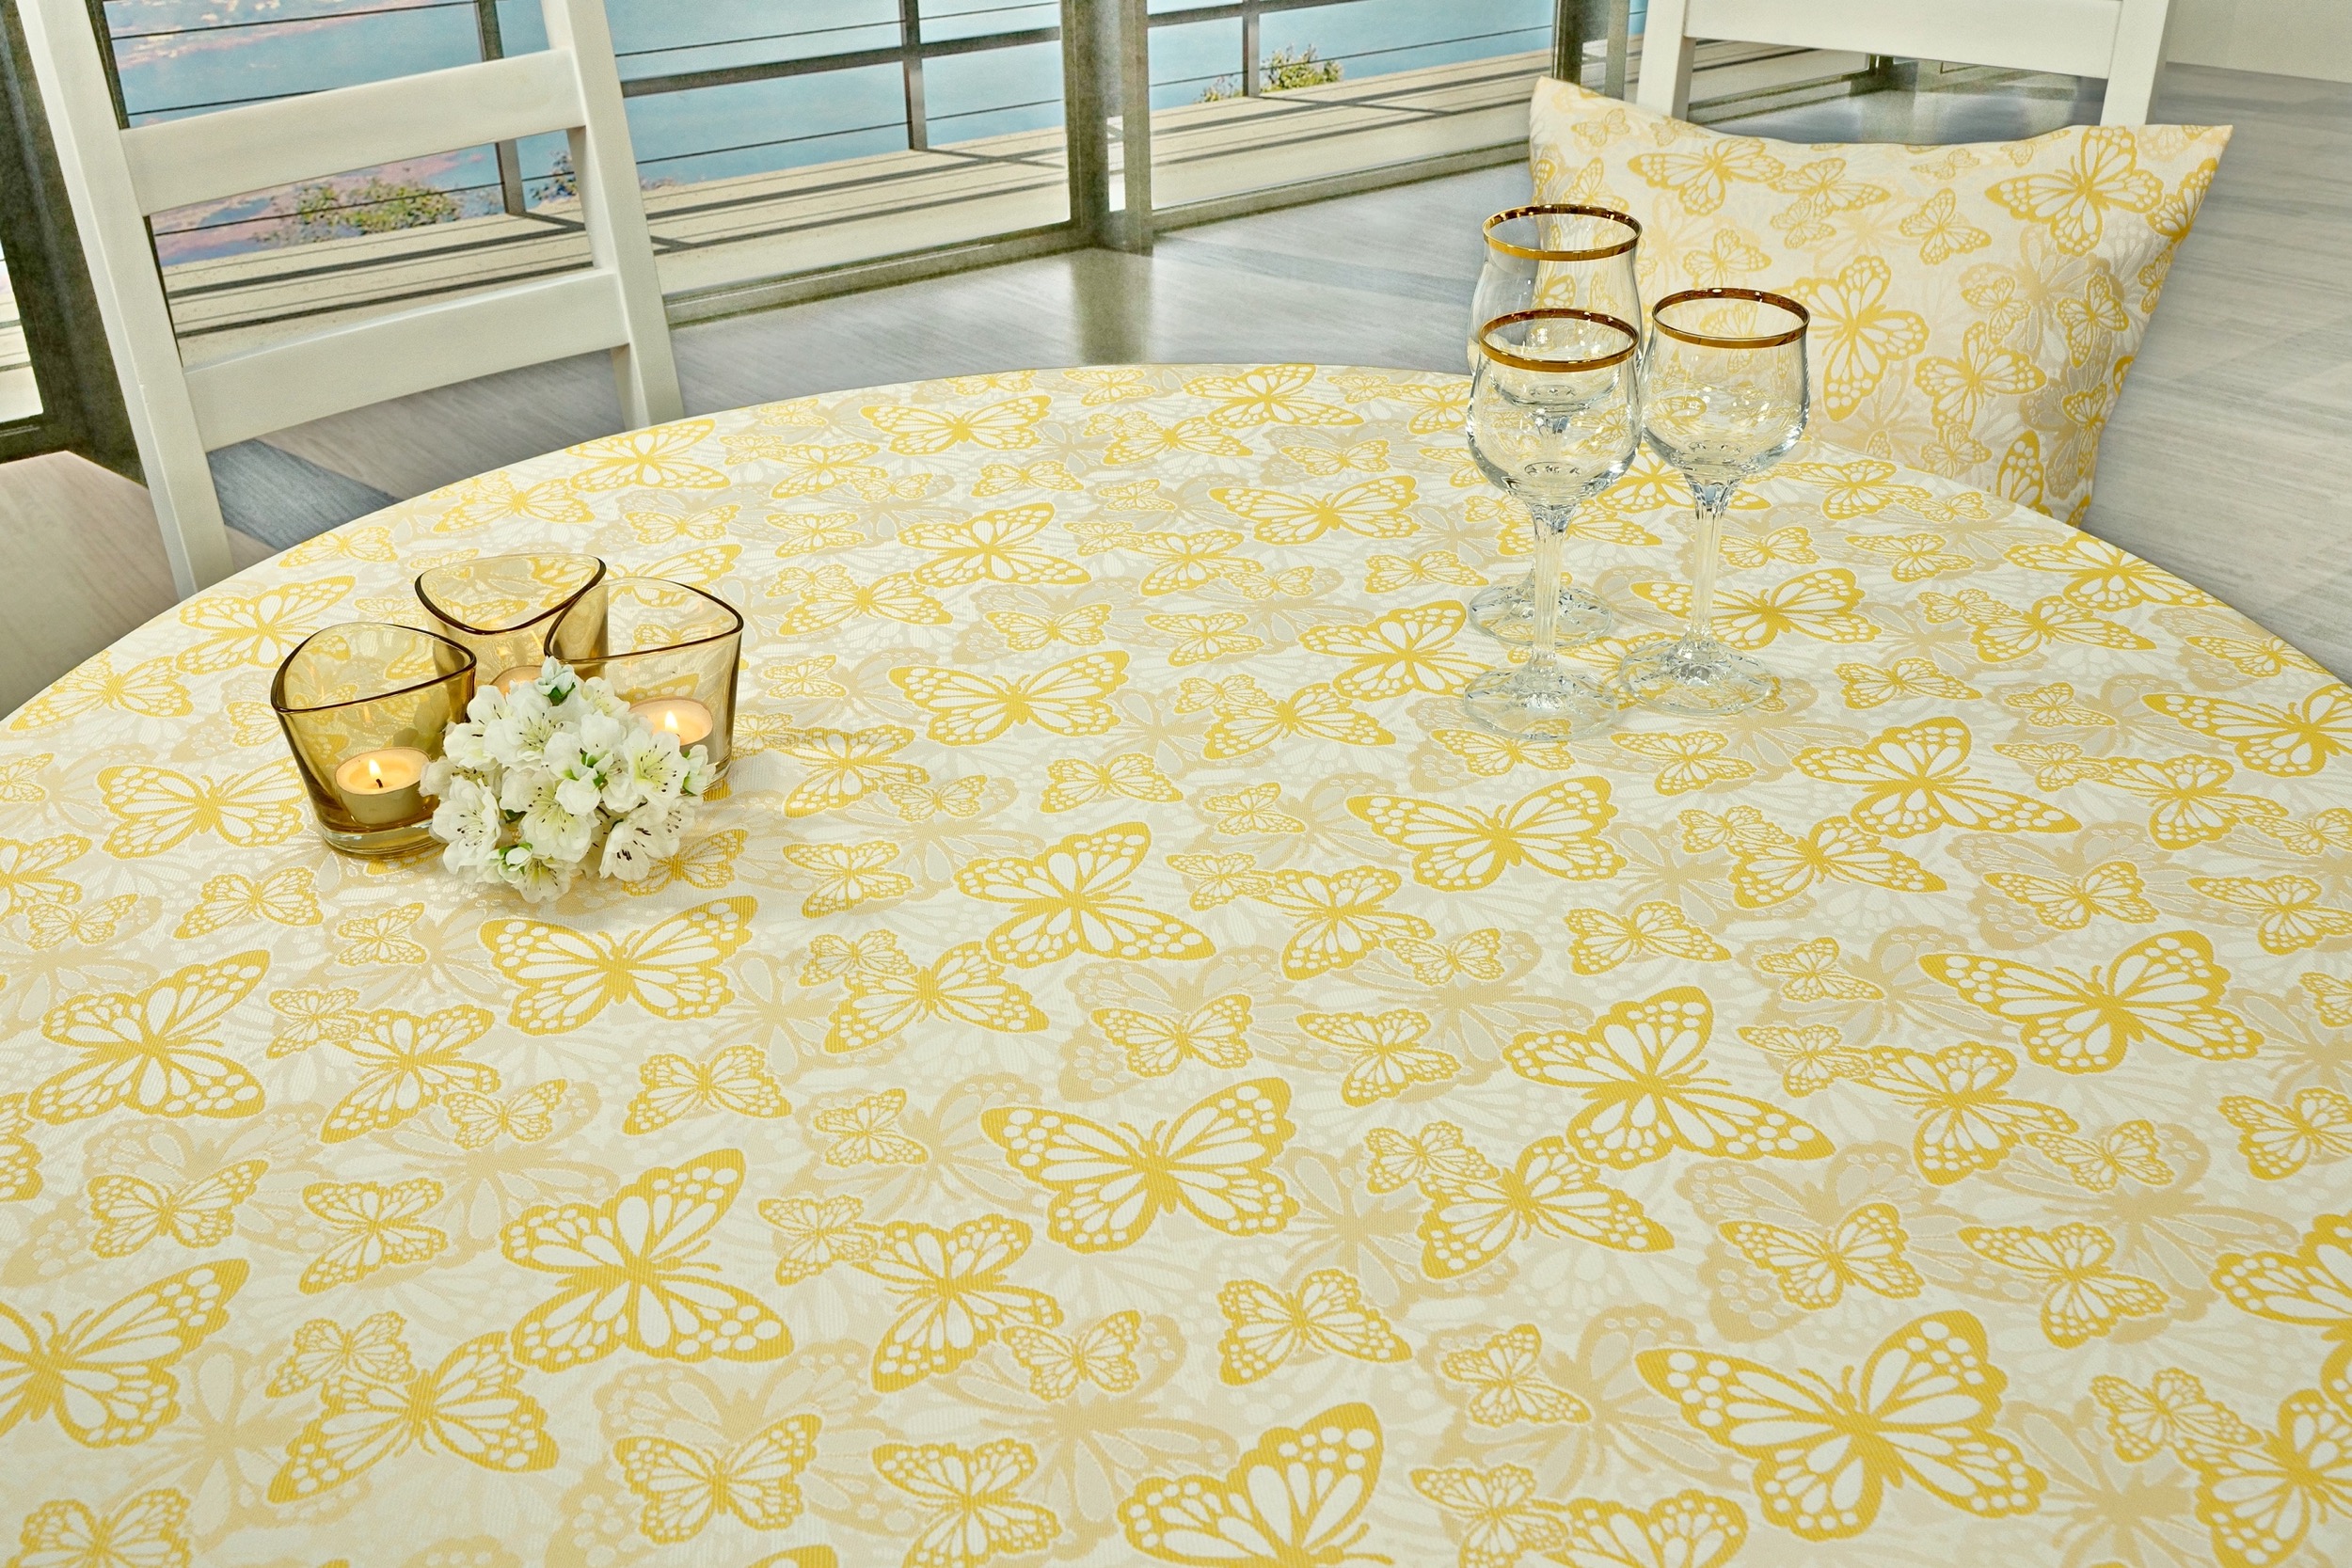 Fleckgeschützte Tischdecke Weiß Gelb Muster Springtime Breite 140 cm OVAL